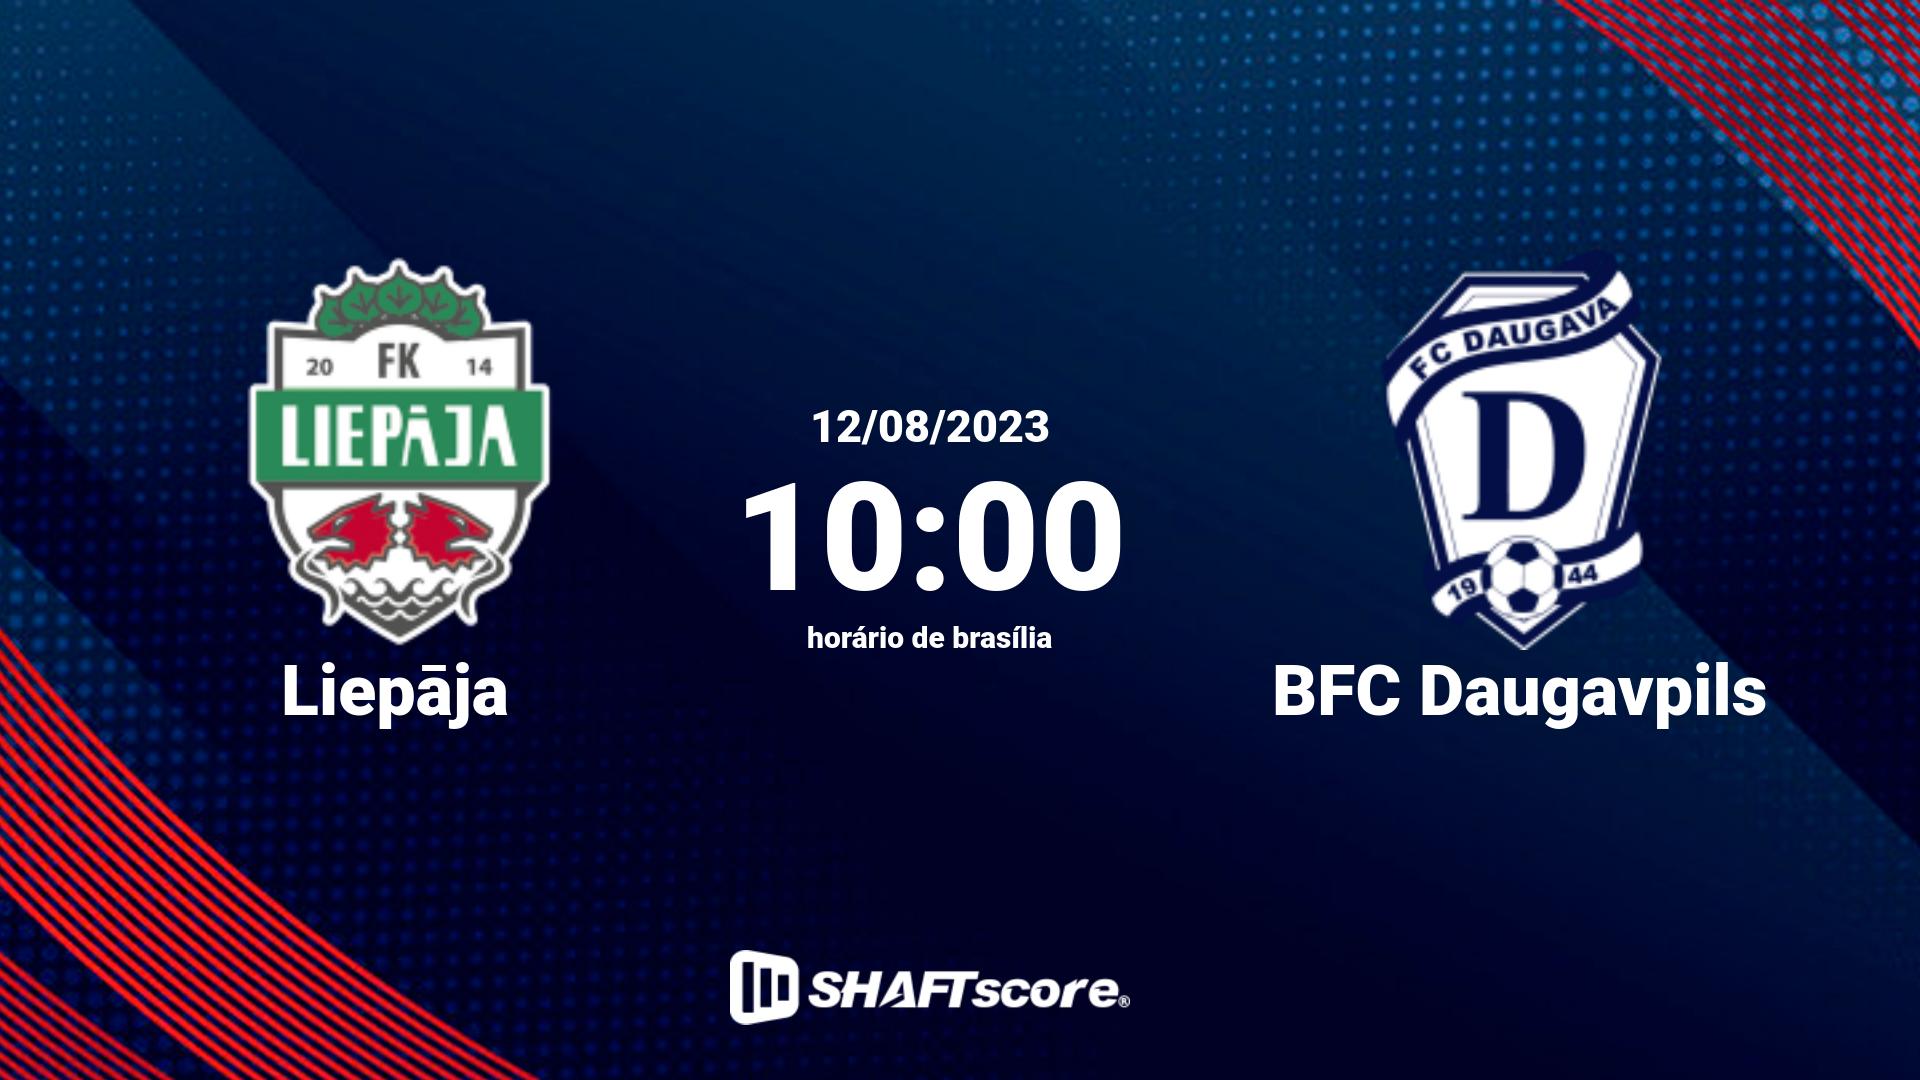 Estatísticas do jogo Liepāja vs BFC Daugavpils 12.08 10:00